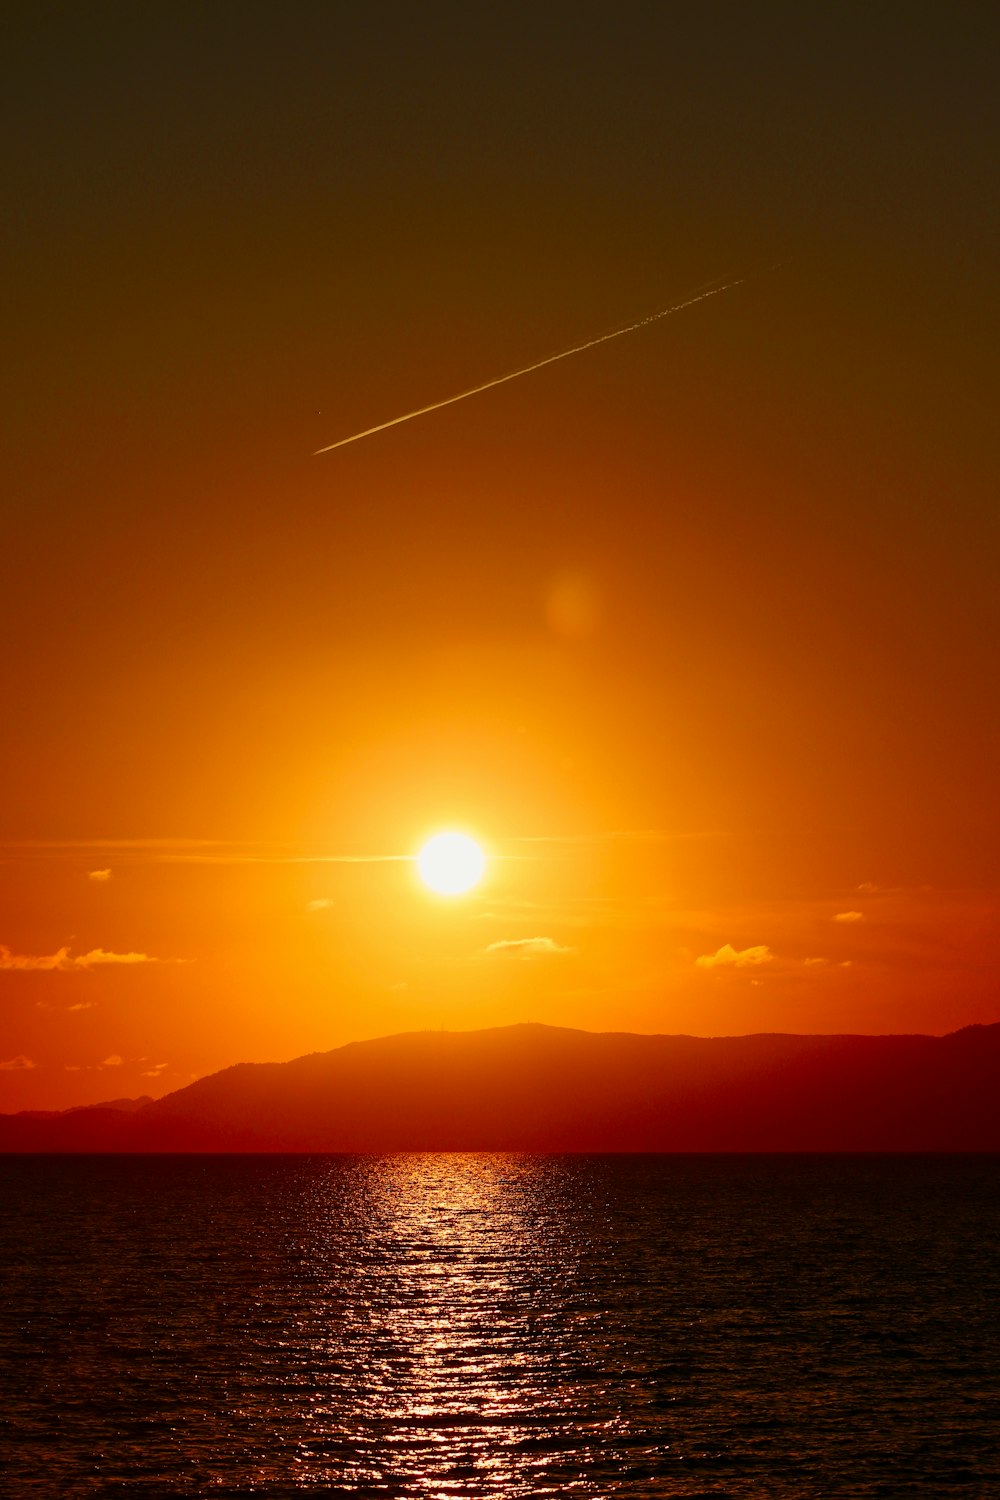 o sol está se pondo sobre o oceano com um avião no céu